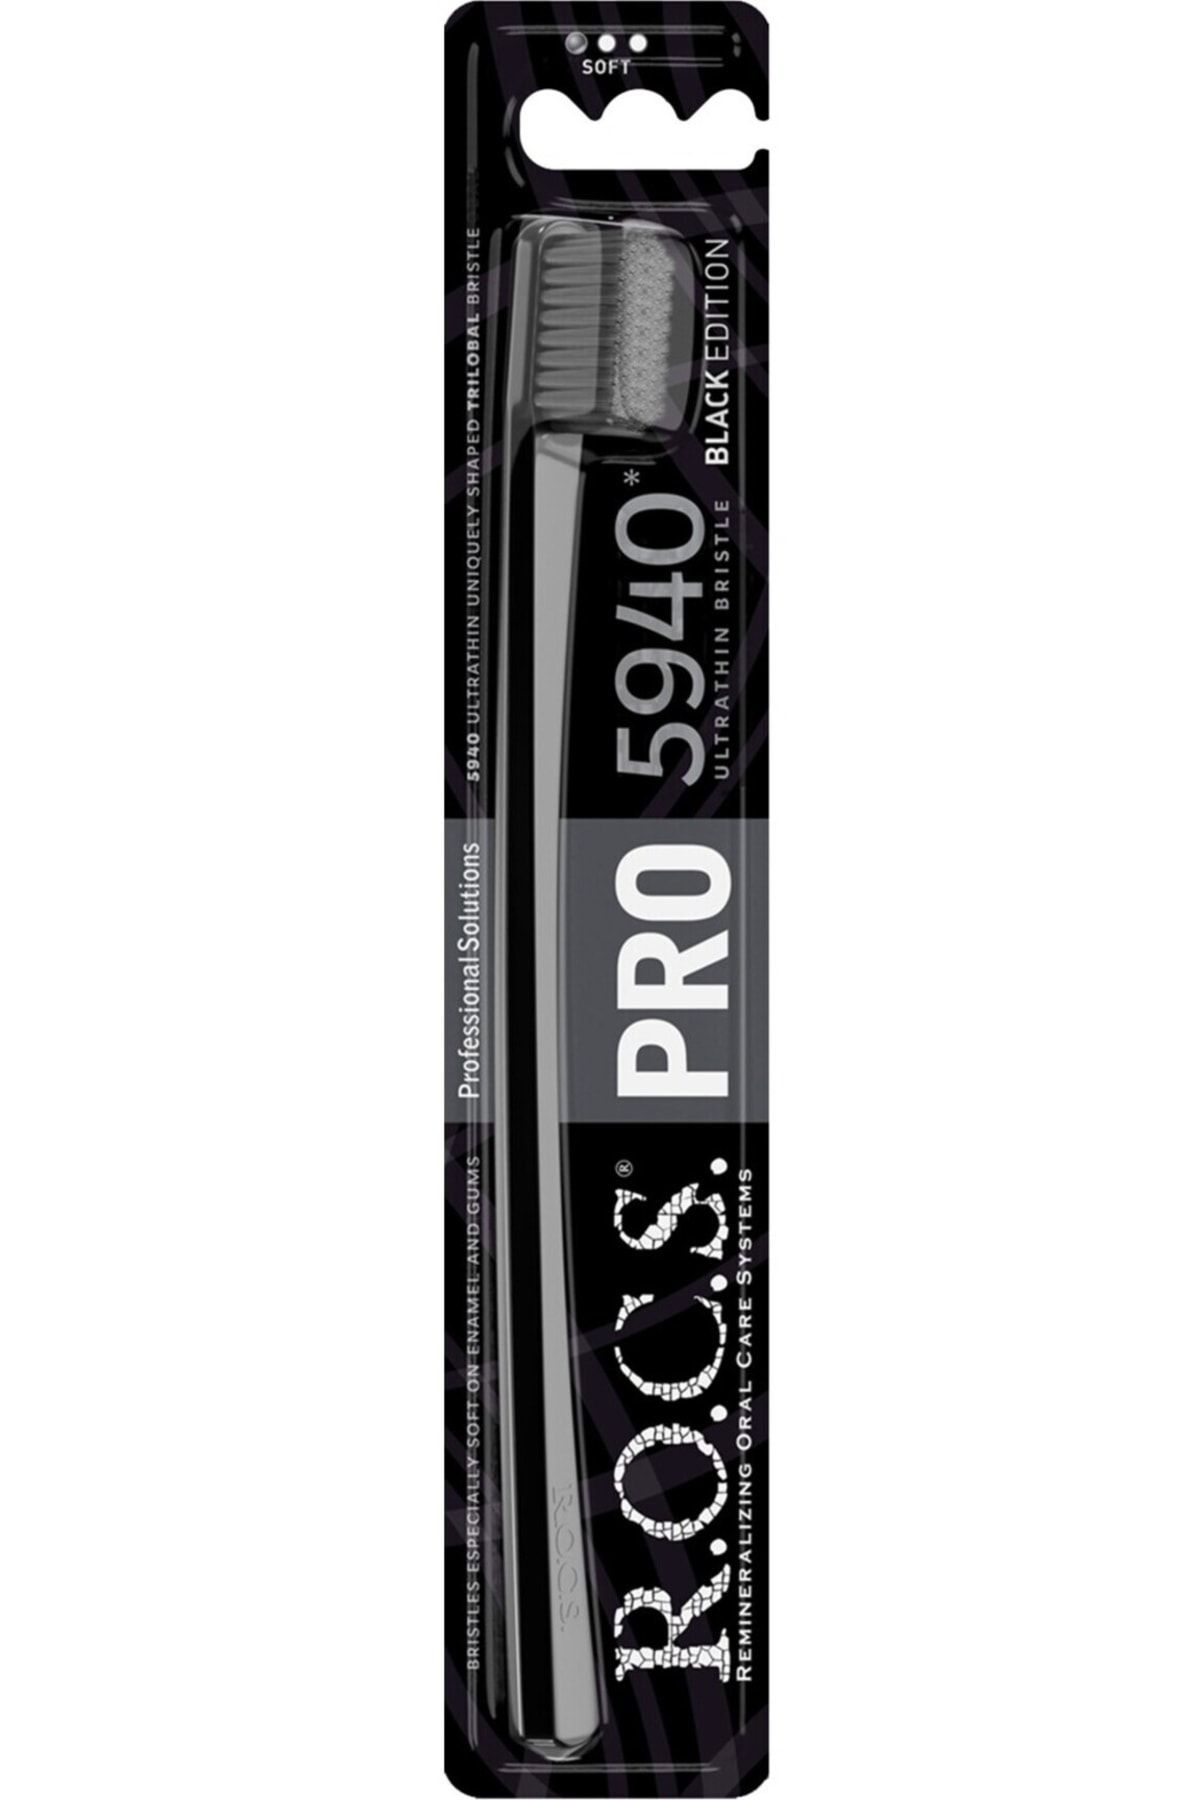 R.O.C.S. Rocs Pro Black 5940 Yeni Seri Soft Diş Fırçası